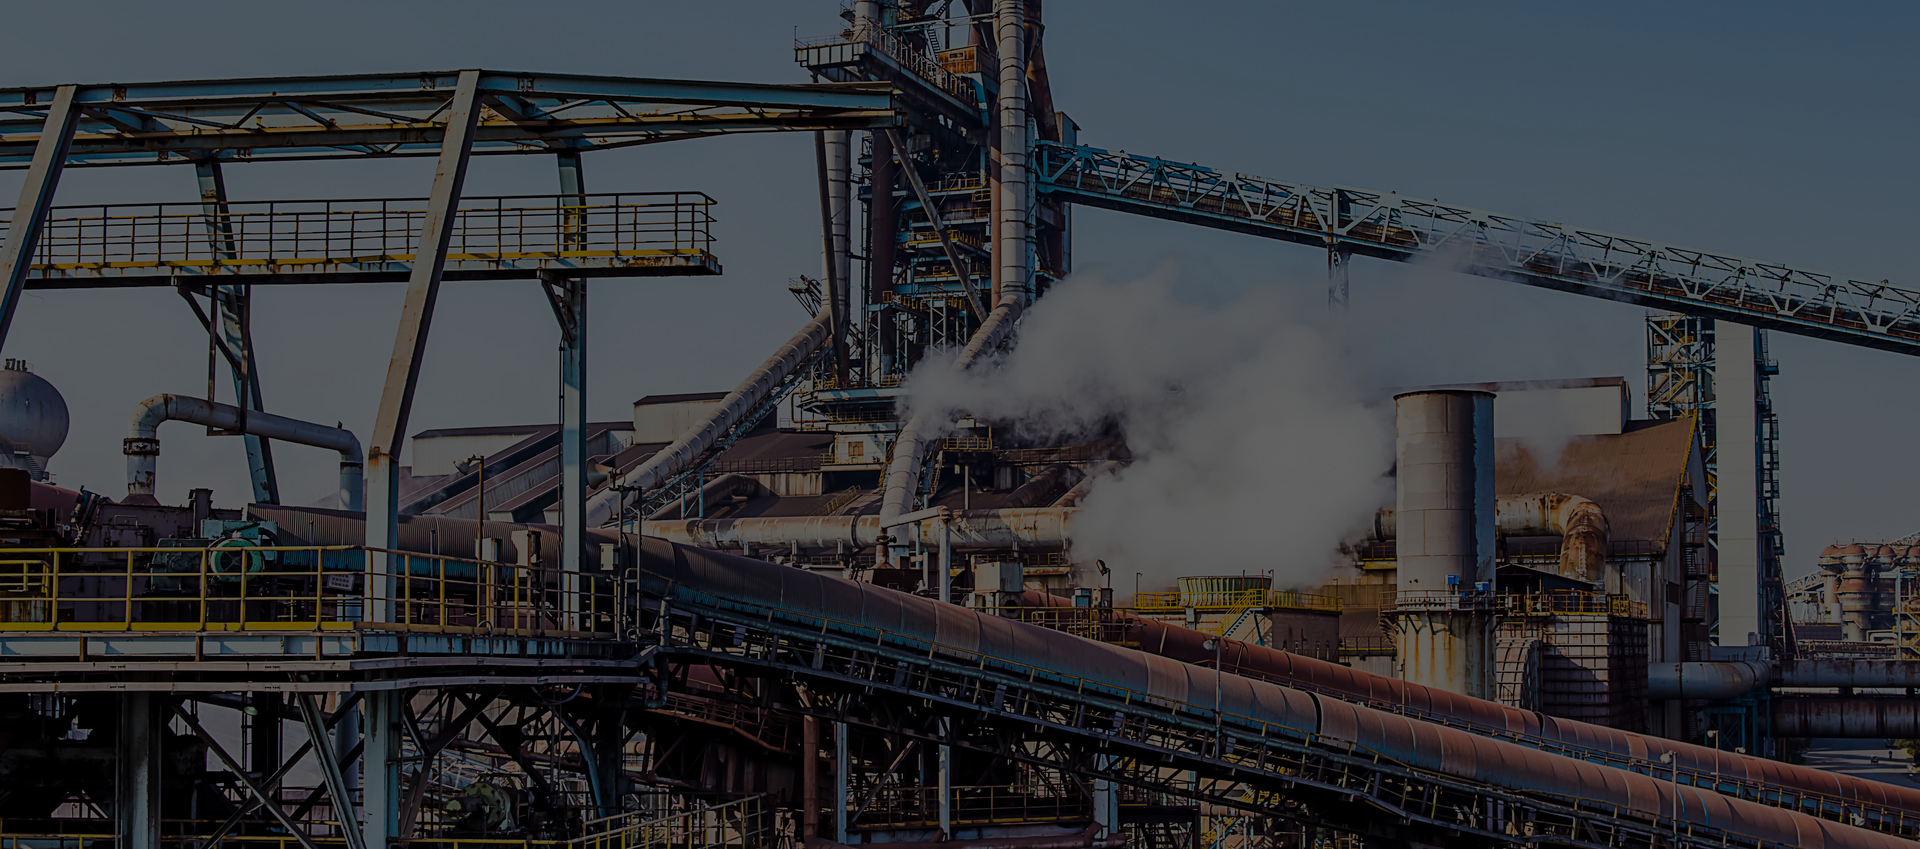 百维斯金属，来自瑞典的高端钢材品牌，您值得信赖的特殊钢材终端整合服务供货商。